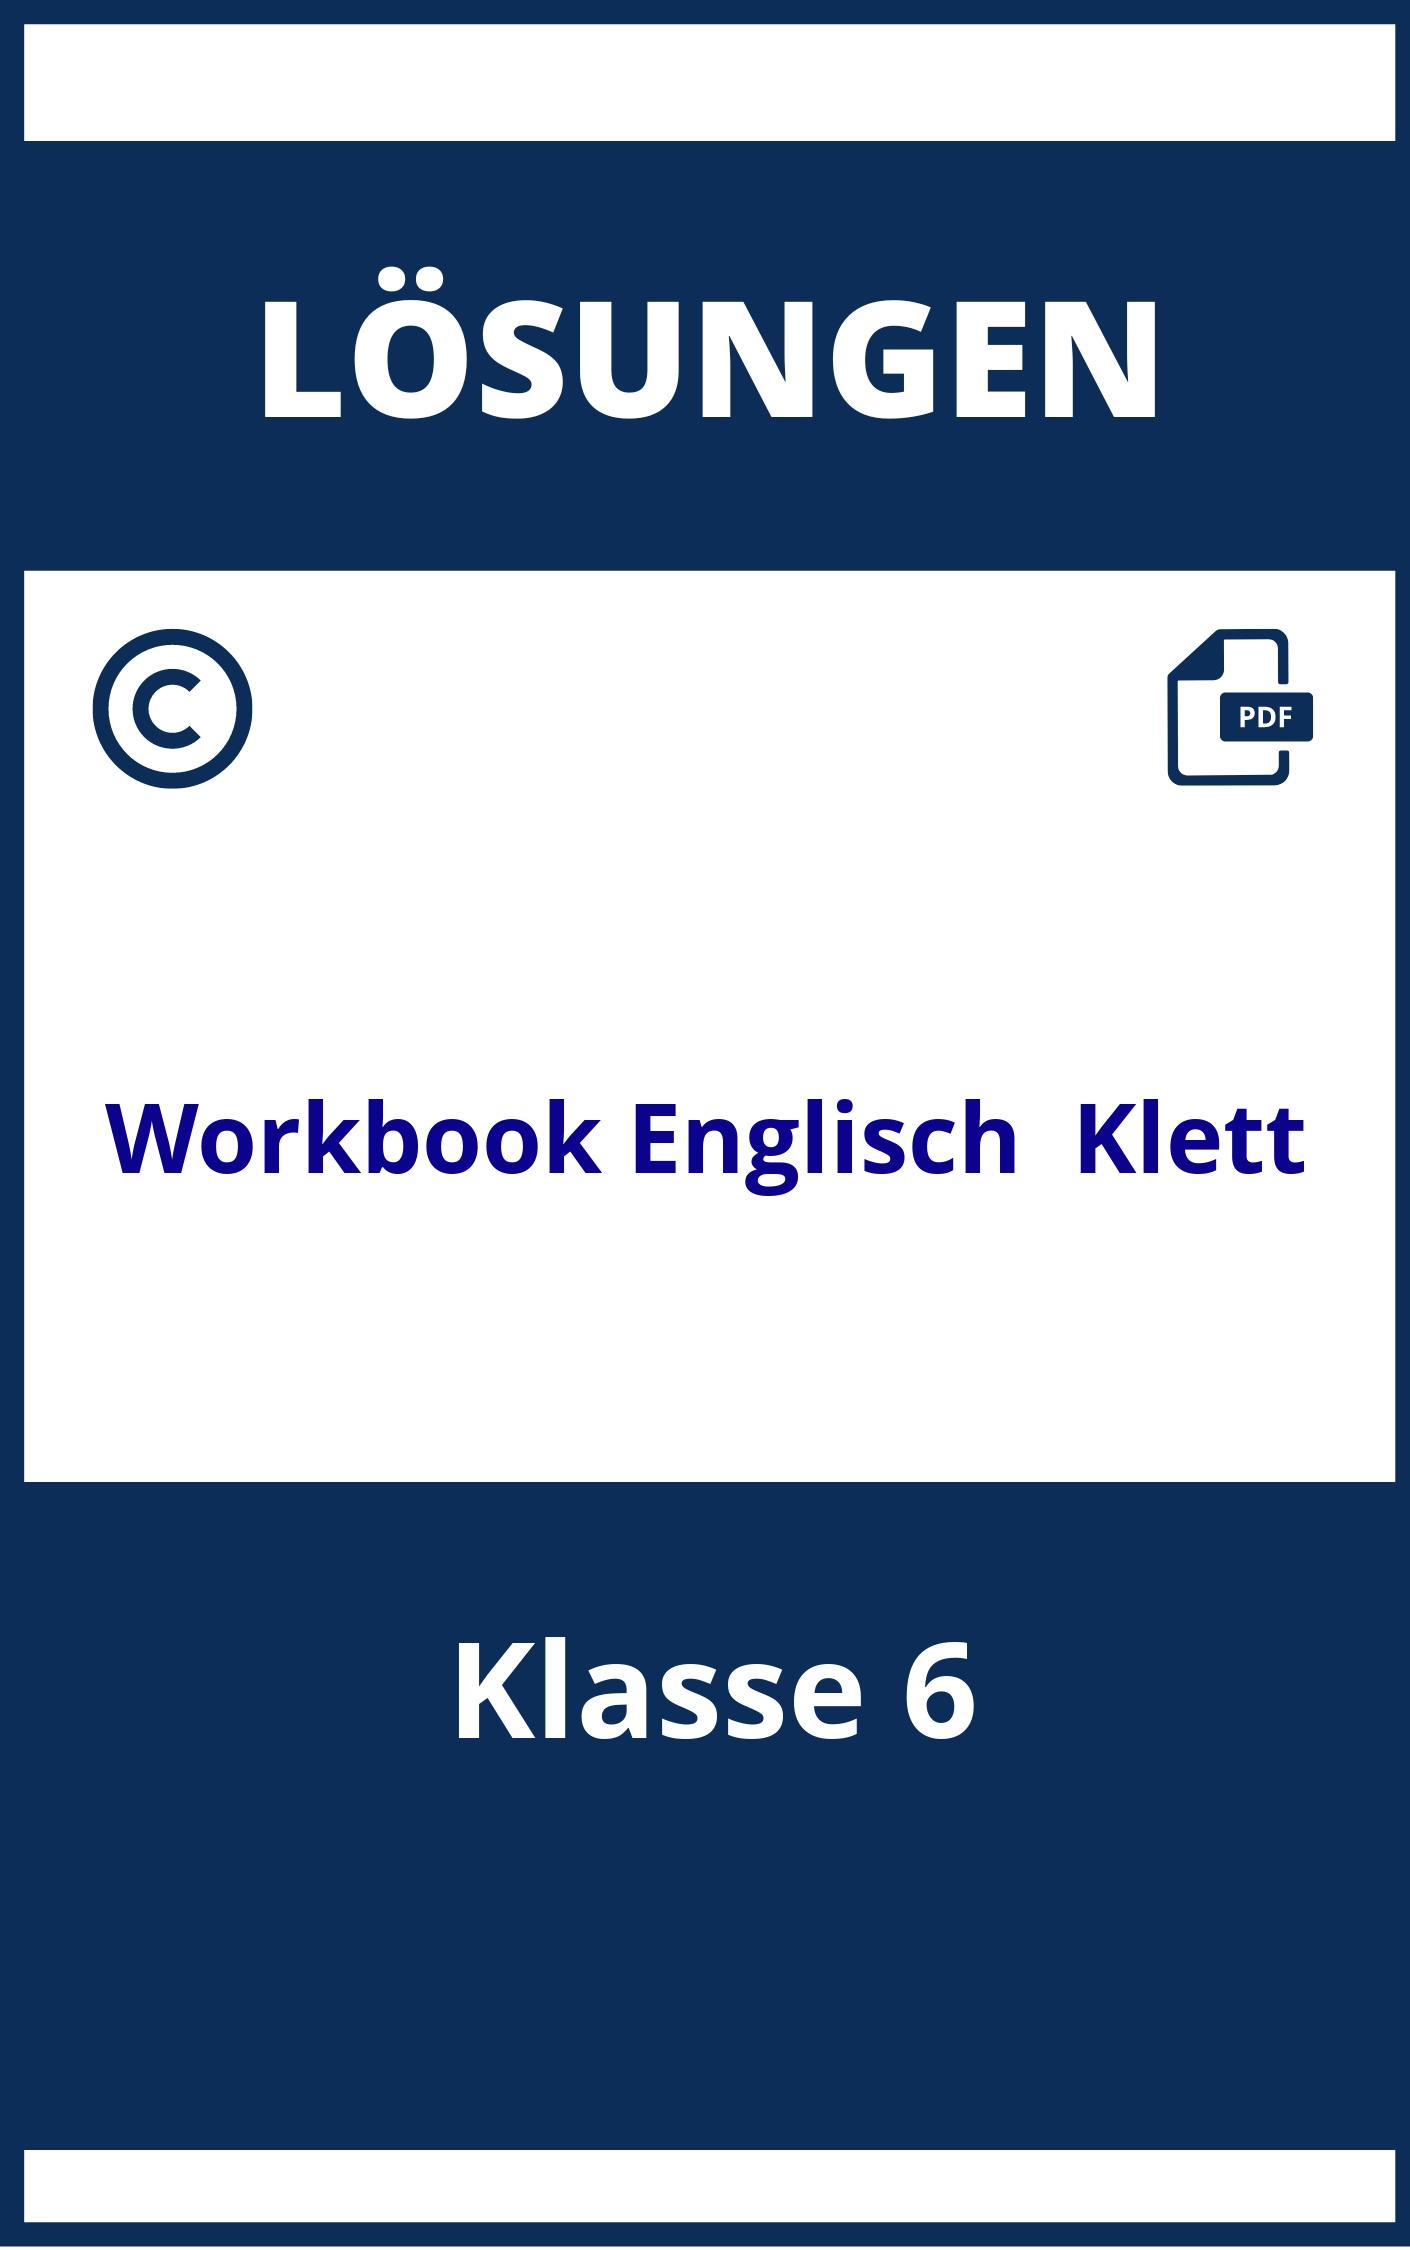 Workbook Englisch Klasse 6 Lösungen Klett